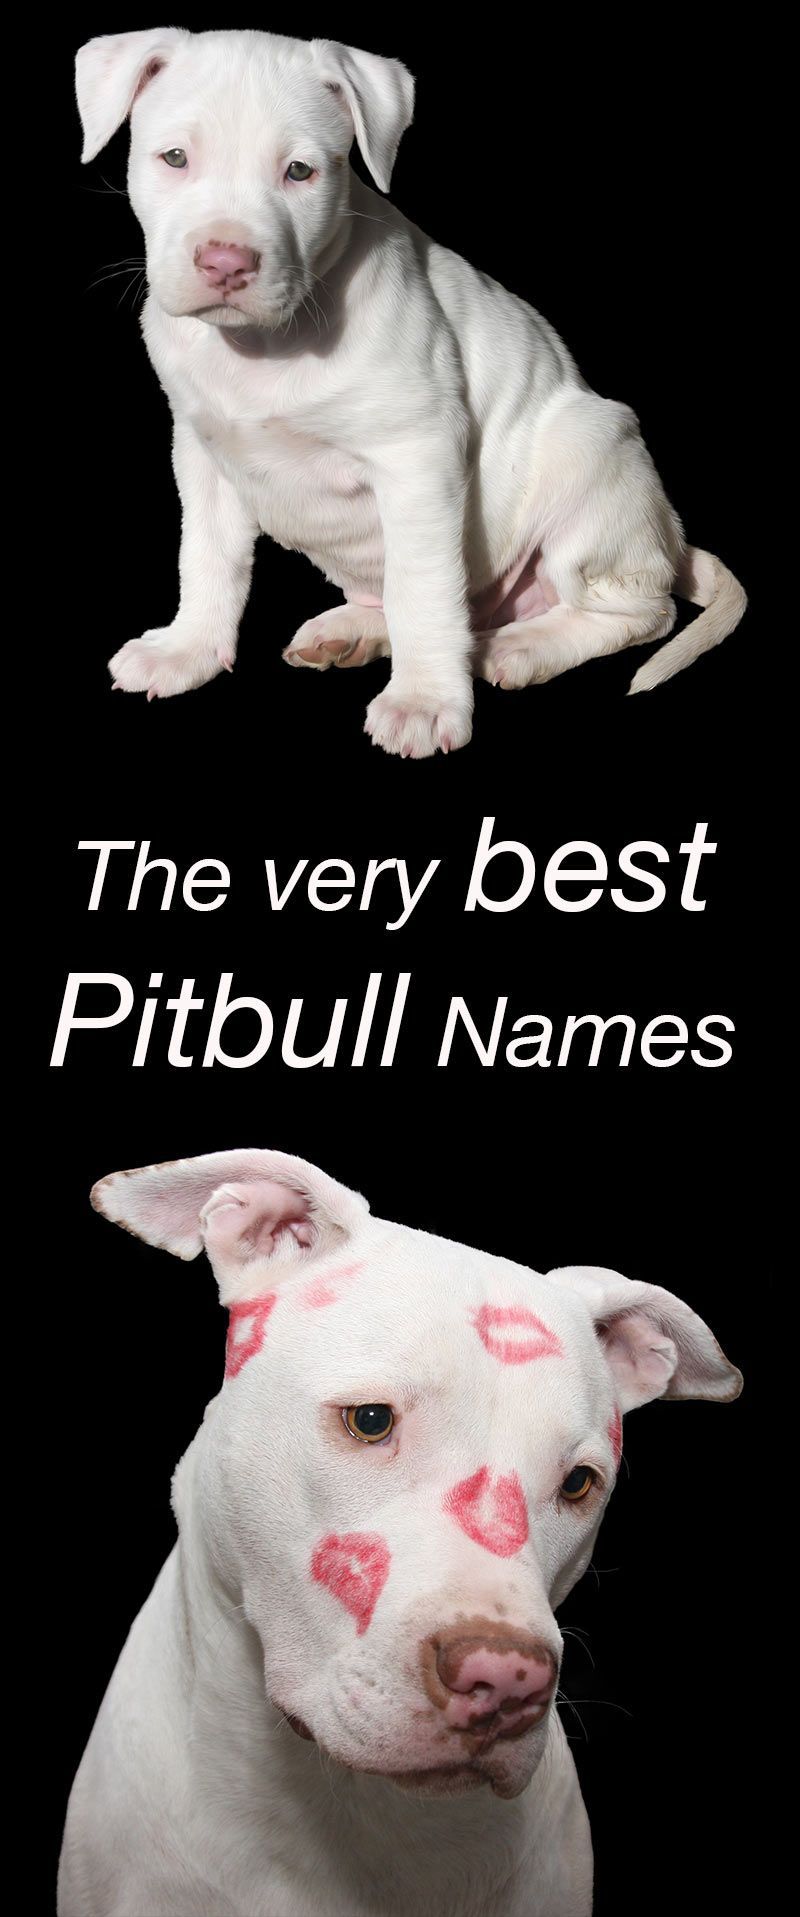 あなたの新しい子犬のための最高のピットブルの名前